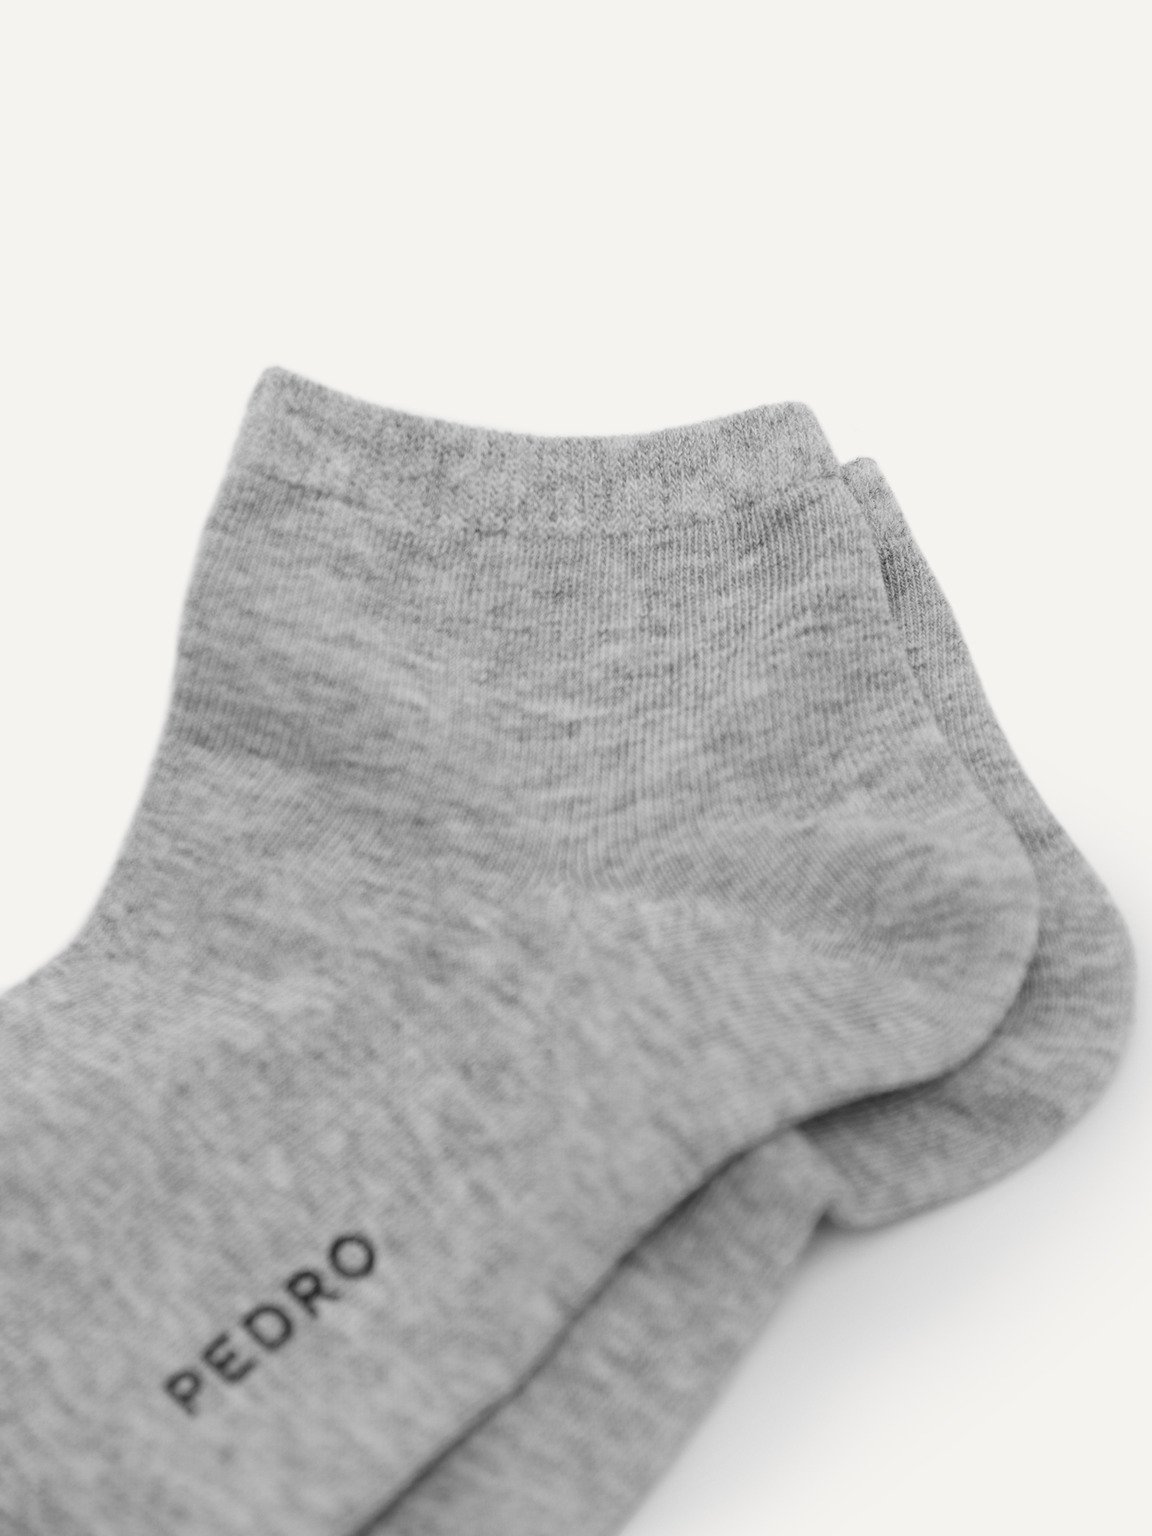 Women's Ankle Socks, Light Grey